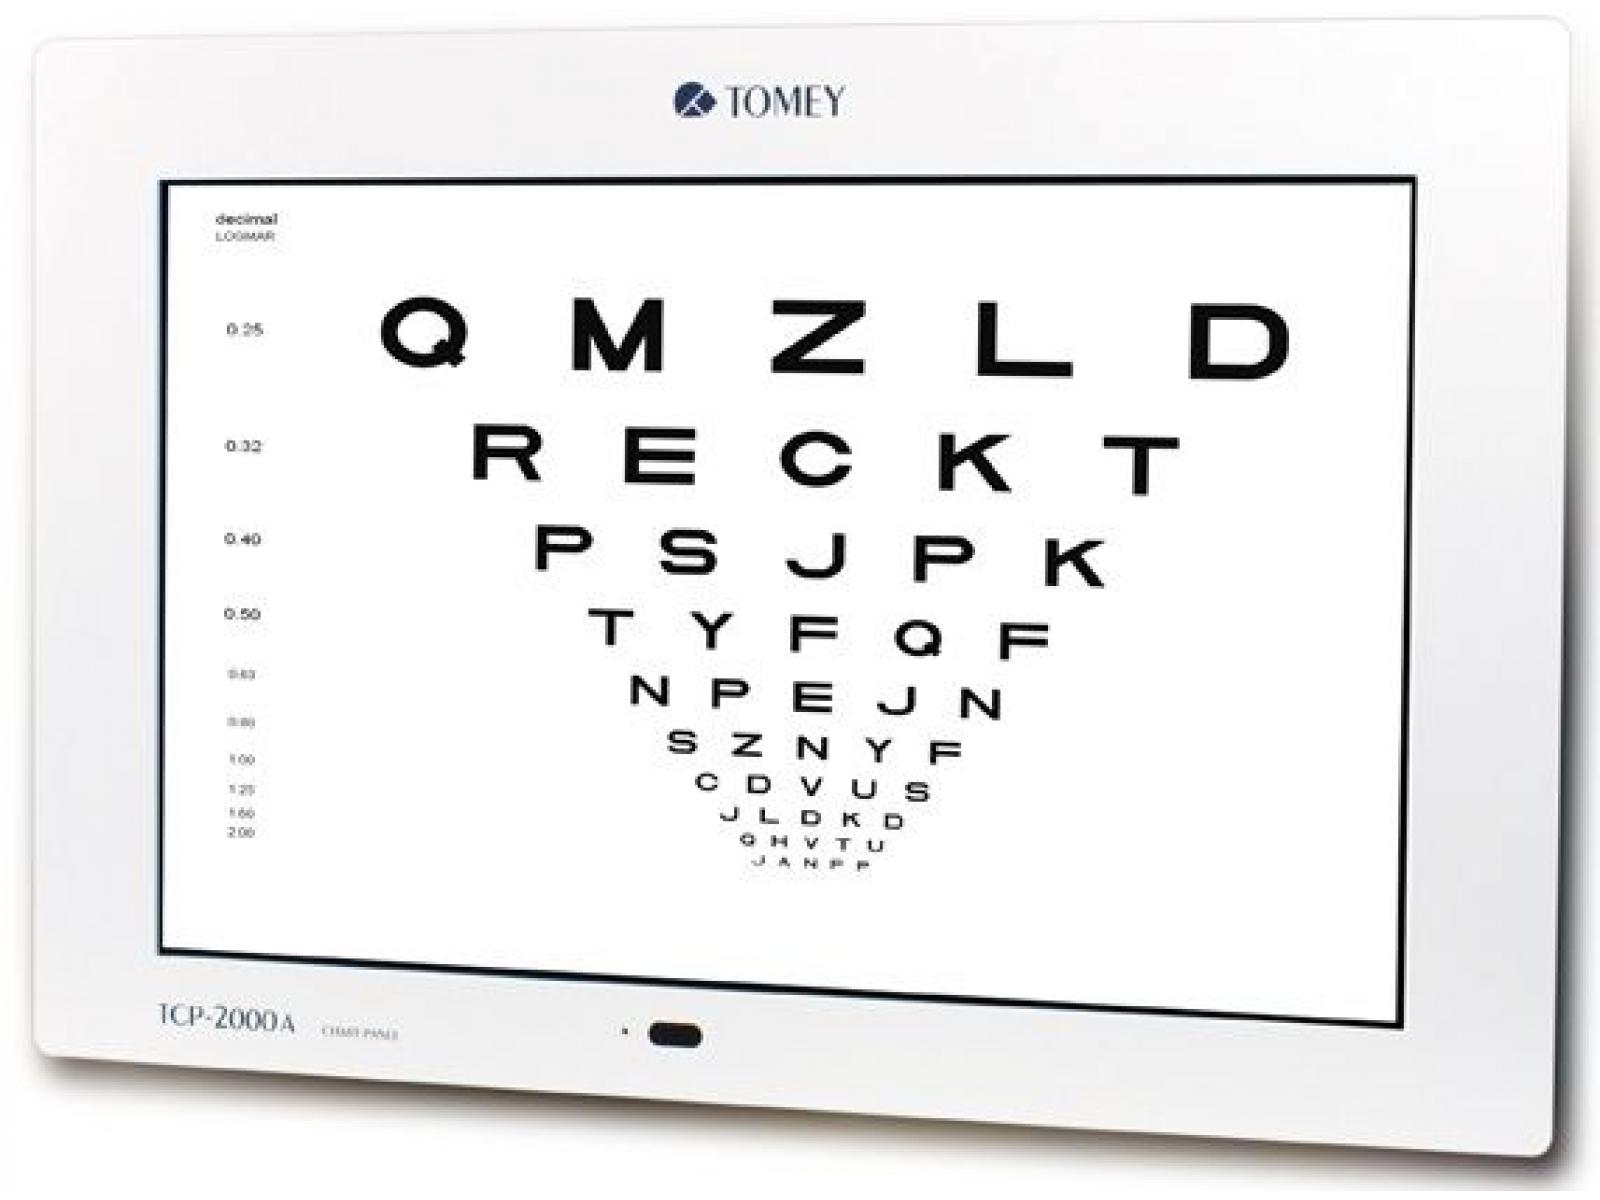 Irene optik-centru de diagnostic oftalmologic - optotip_computerizat_LCD.jpg